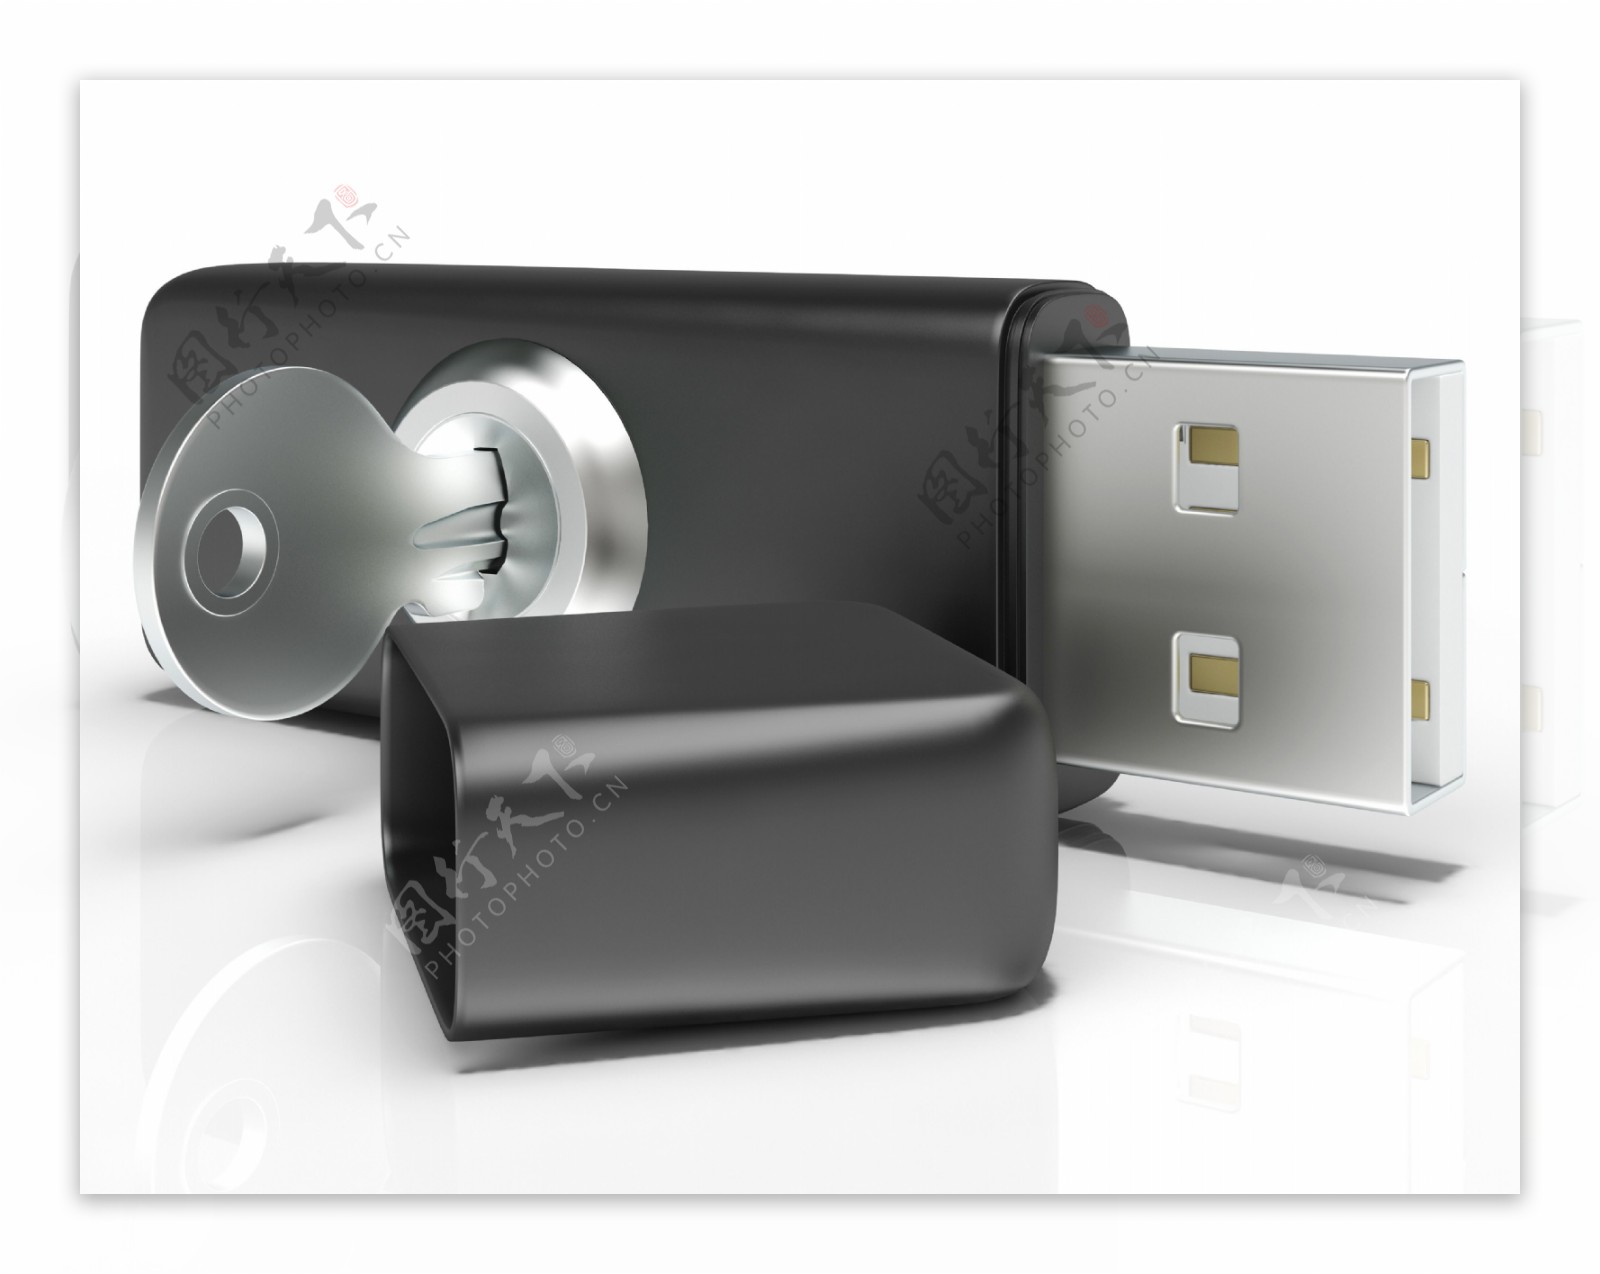 USB闪存和键显示安全的便携式存储